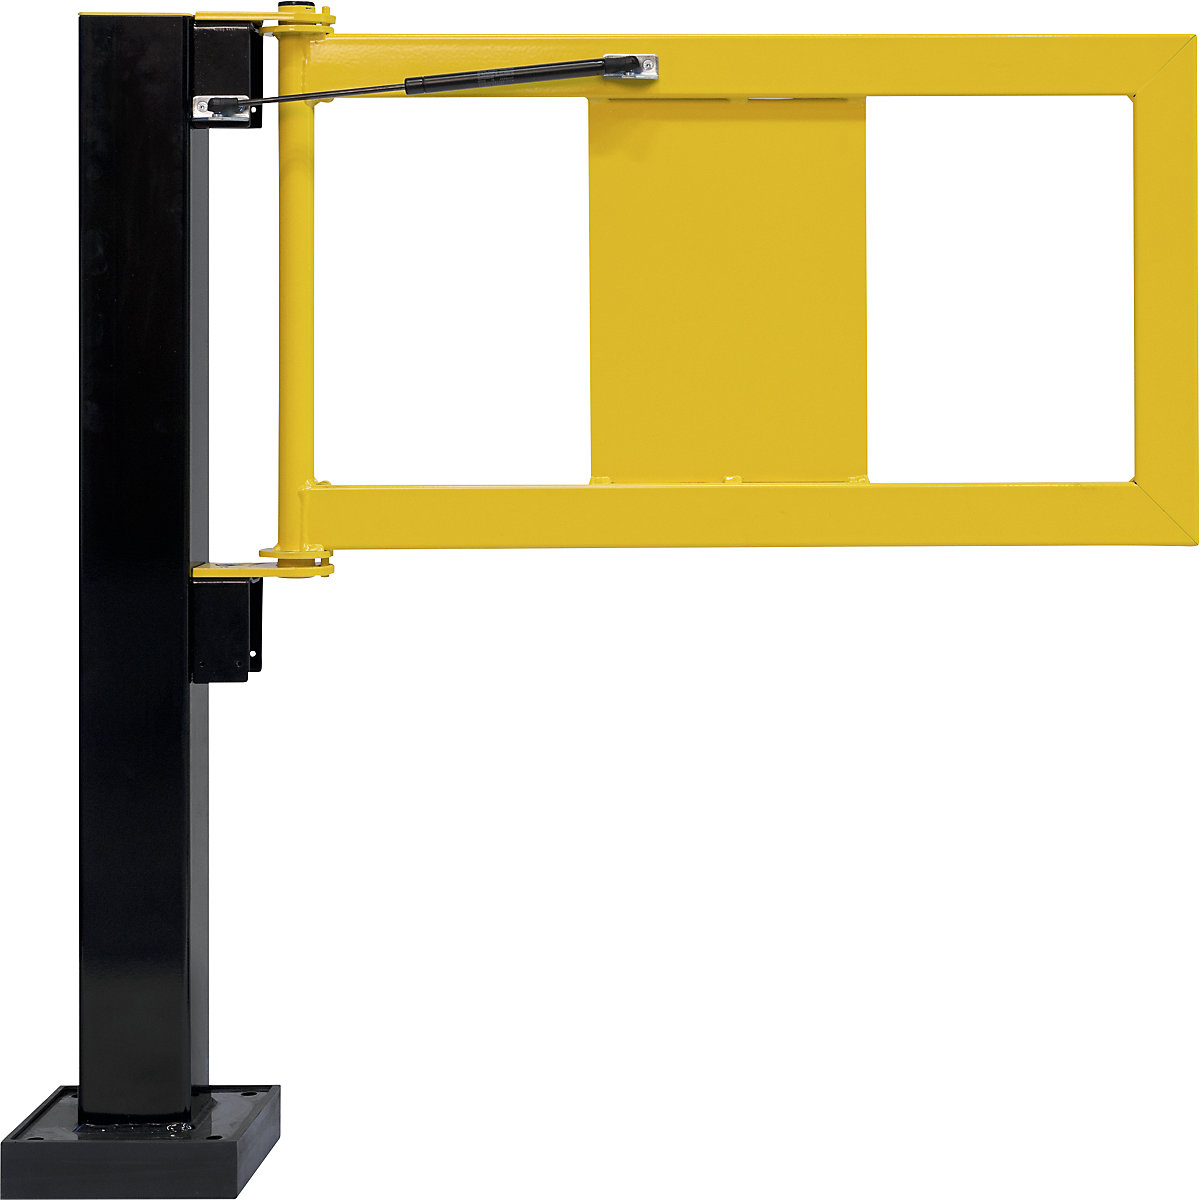 BLACK BULL Geländer-Tür mit Gasdruckfeder, LxBxH 30 x 905 x 520 mm, gelb